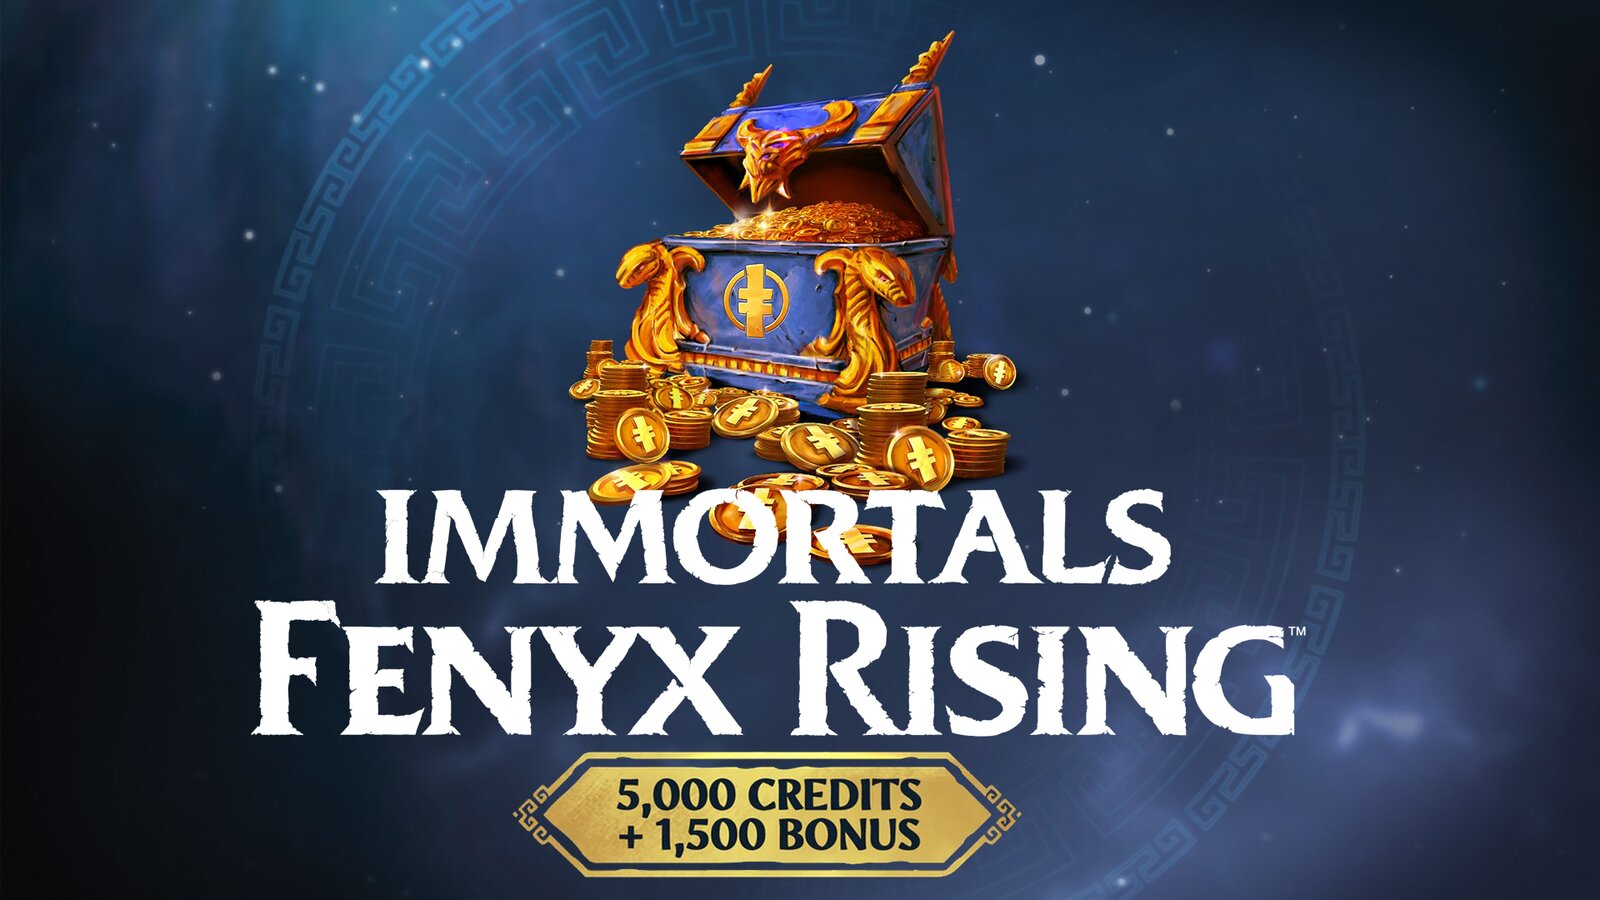 Immortals Fenyx Rising - 6500 Credits Pack